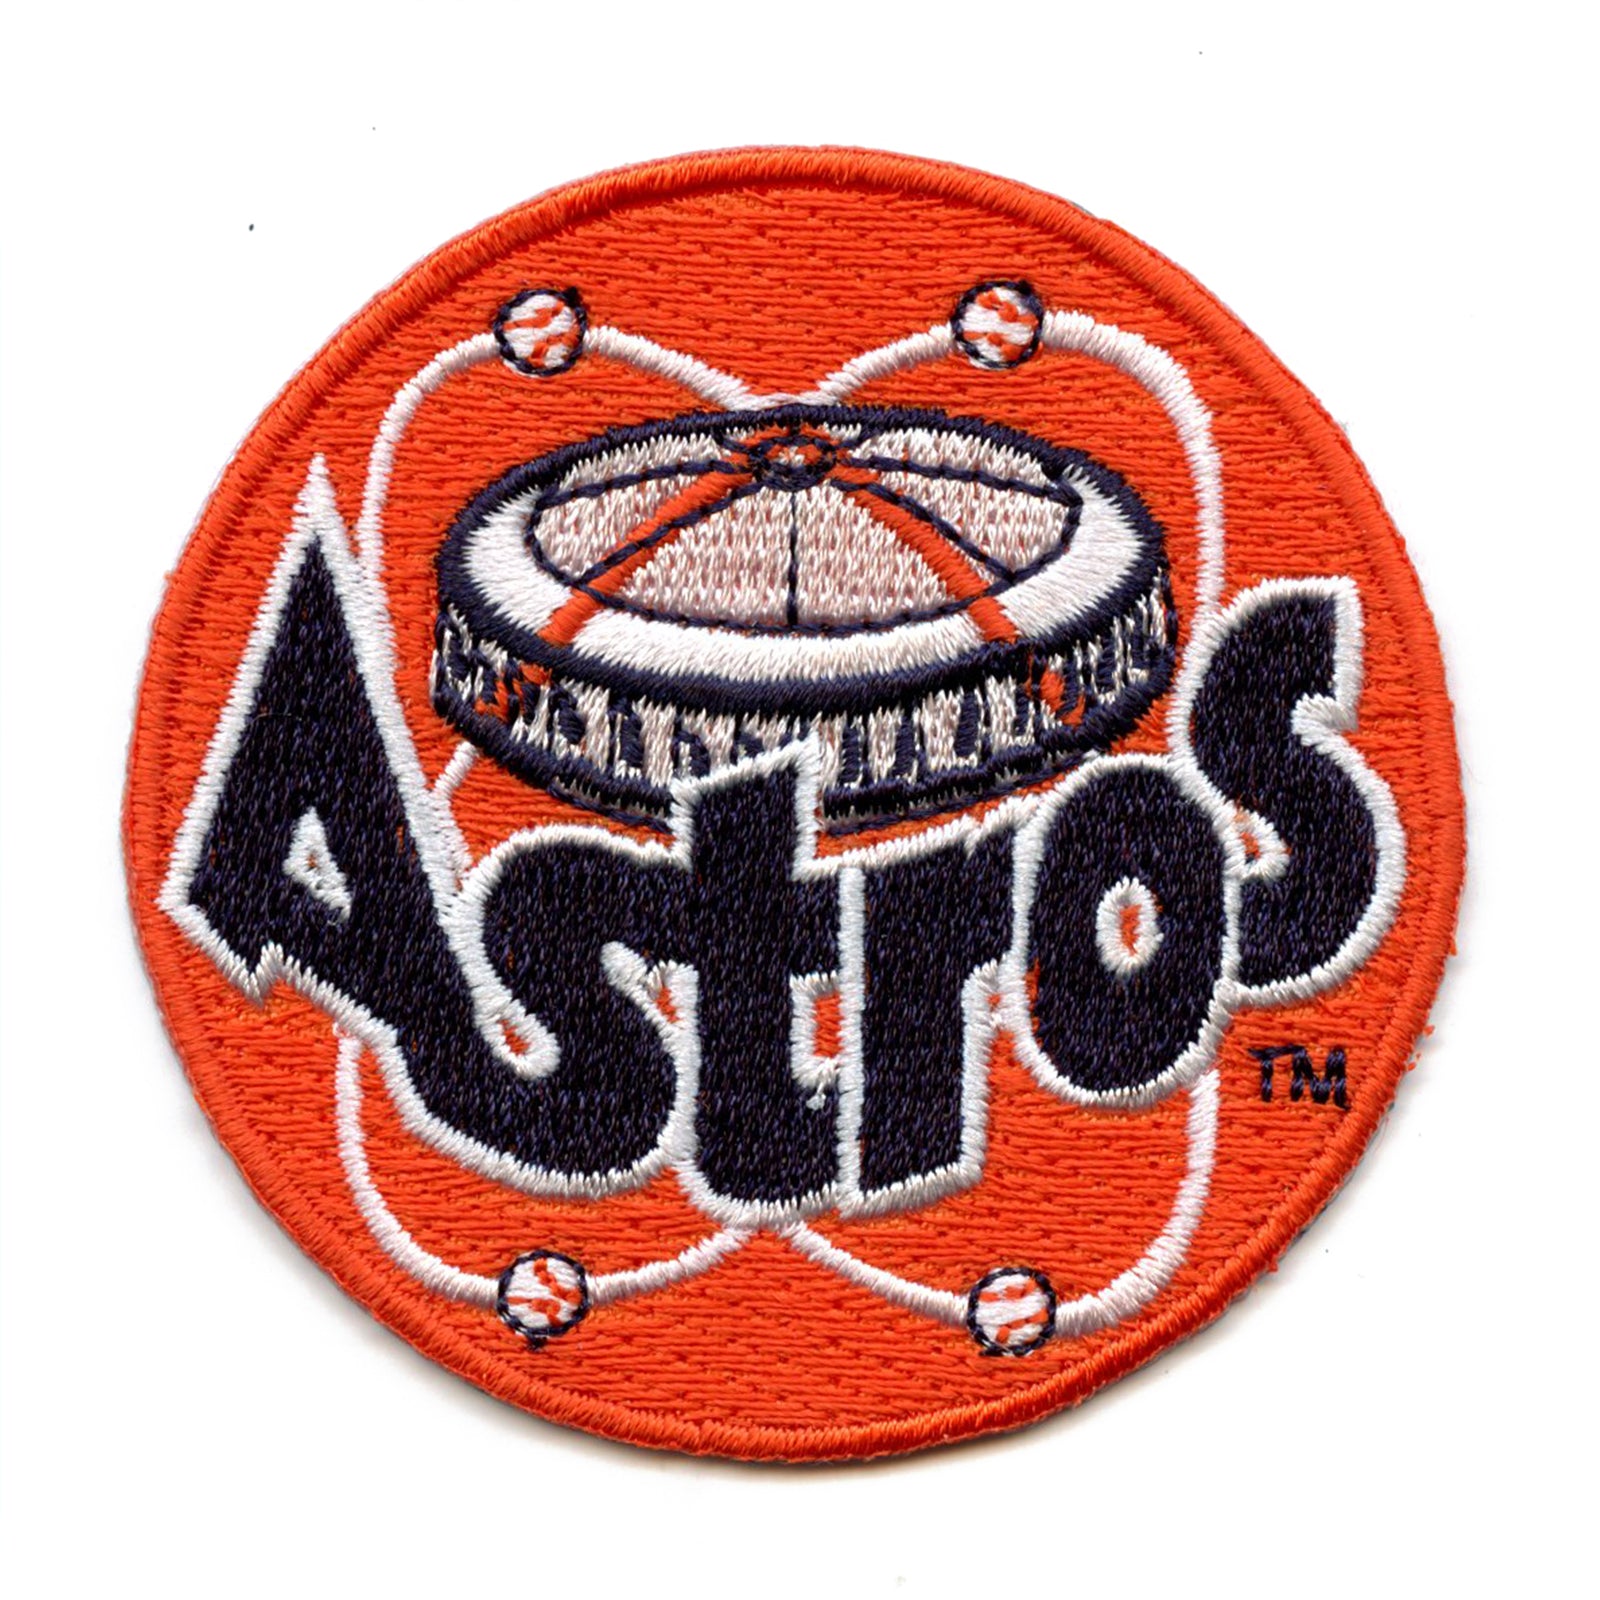 Atuve Retro Houston Astros Logo Parody for Fans Vintage Retro